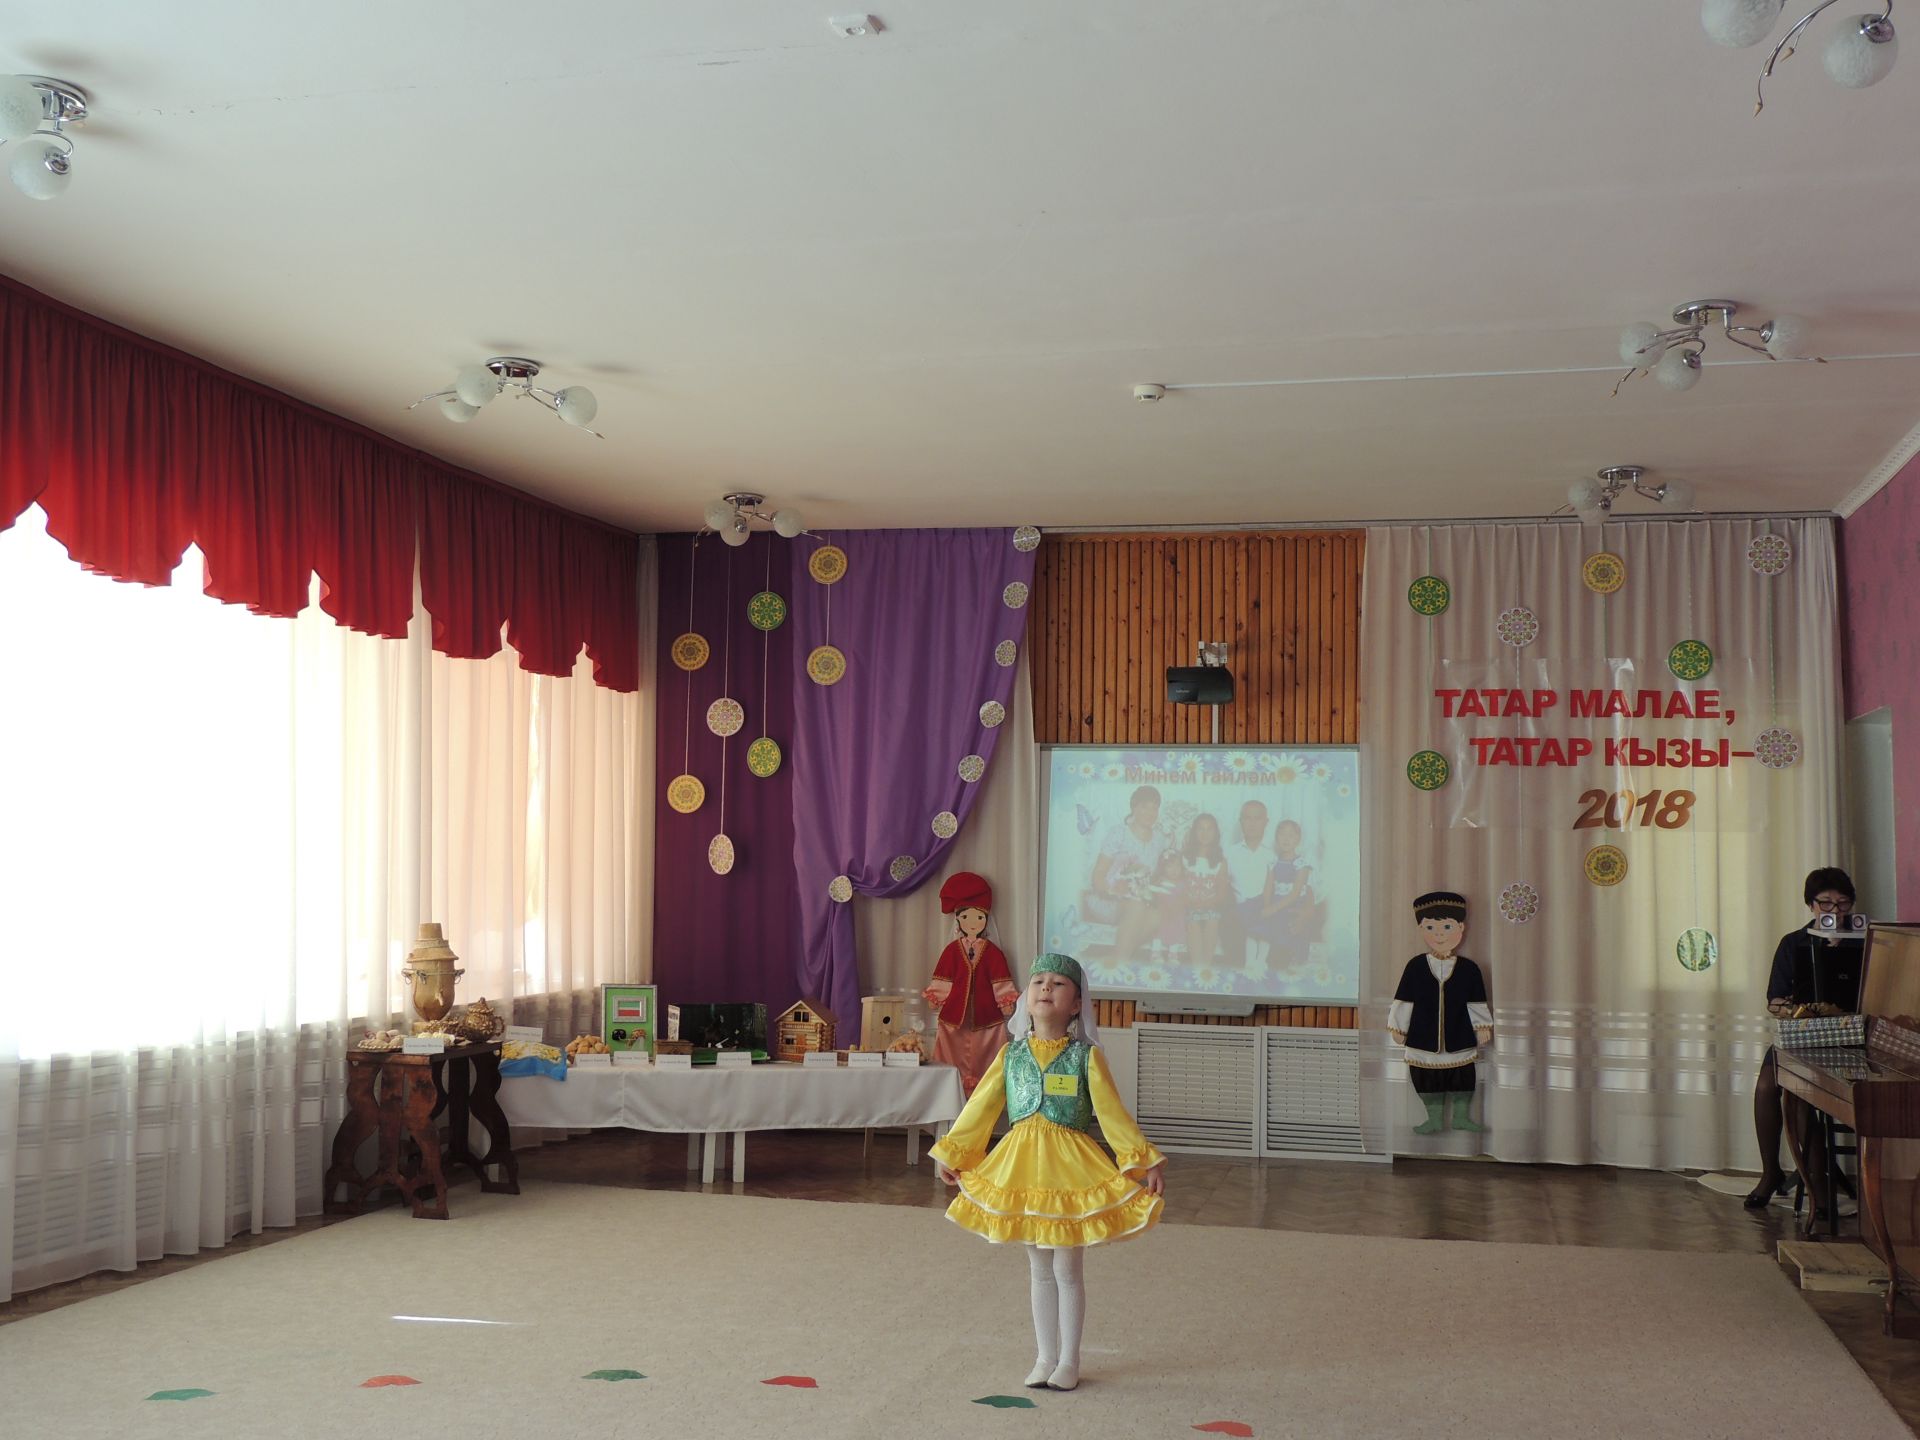 В Джалиле прошел муниципальный конкурс «Татар малае, татар кызы -2018» среди воспитанников детских садов.